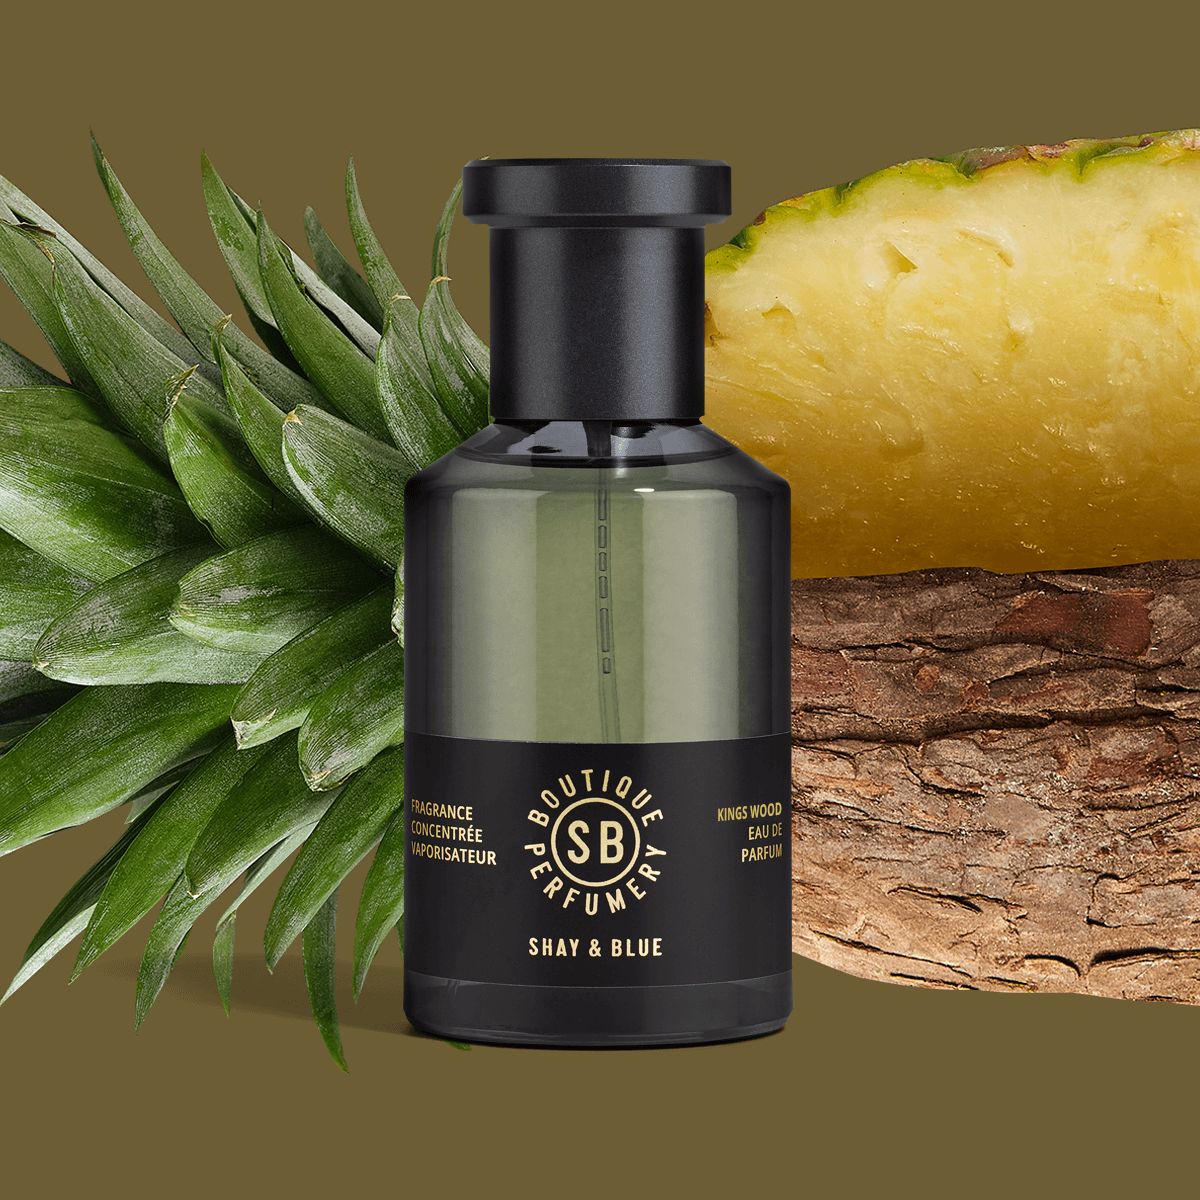 Kings Wood Fragrance Concentrate 100ml | Frisse ananas met het natuurlijke aroma van fearn bladeren. | Schone geur voor mannen en vrouwen Shay & Blue